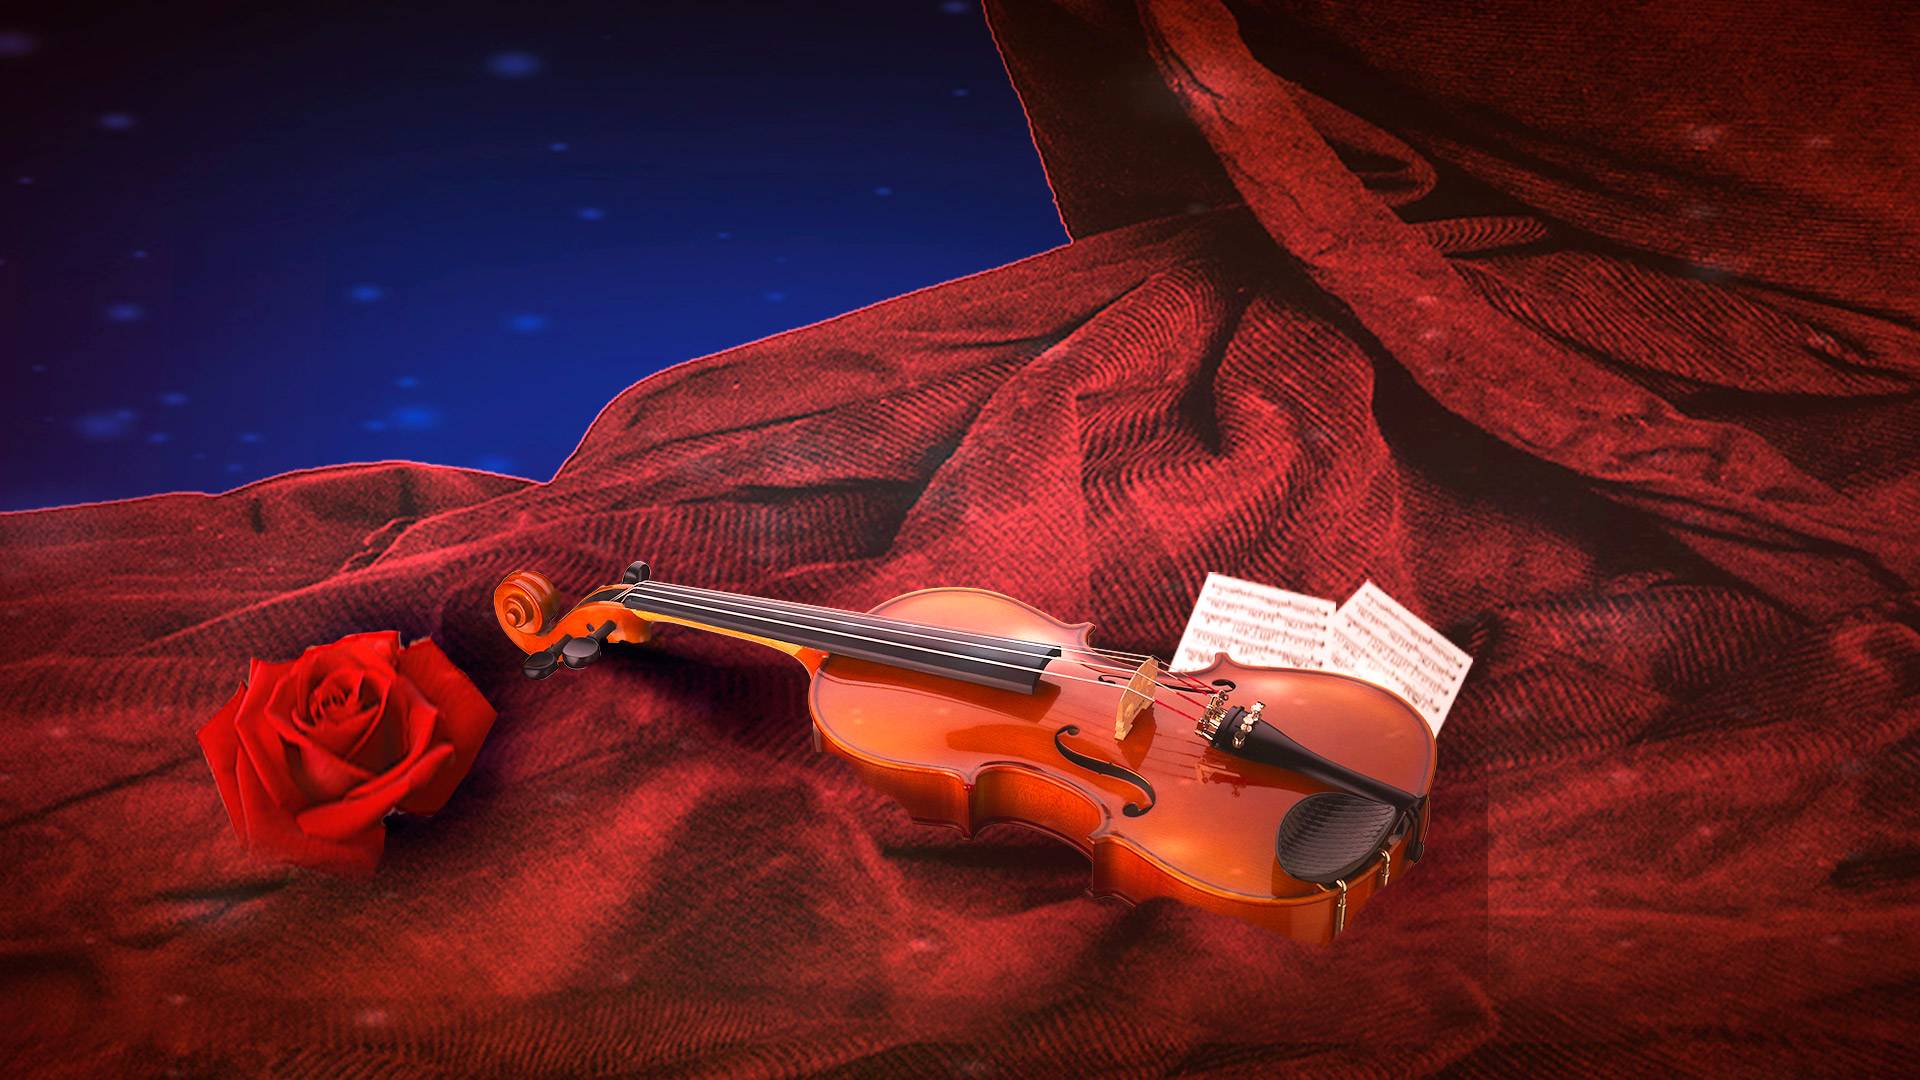 Вивальди вальс. Антонио Вивальди скрипка. Скрипка на красивом фоне. Девушки со скрипкой. Скрипка и рояль.